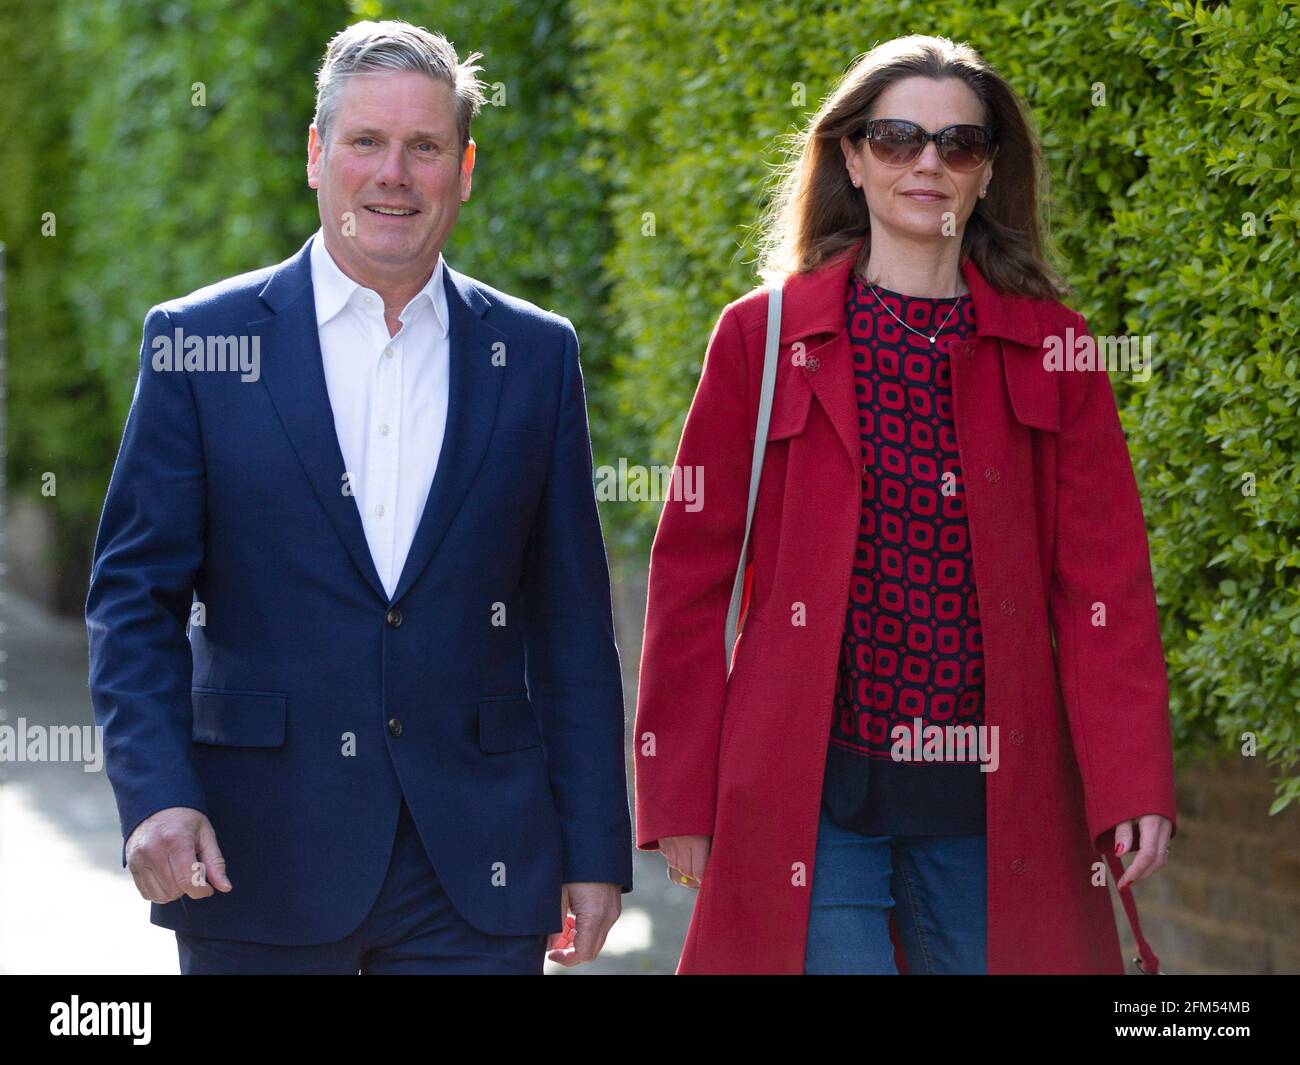 Der Gewerkschaftsführer Sir Keir Starmer und seine Frau Victoria gehen am 6. Mai 2021 zu ihrer lokalen Polling Station in Nord-London, Großbritannien Stockfoto